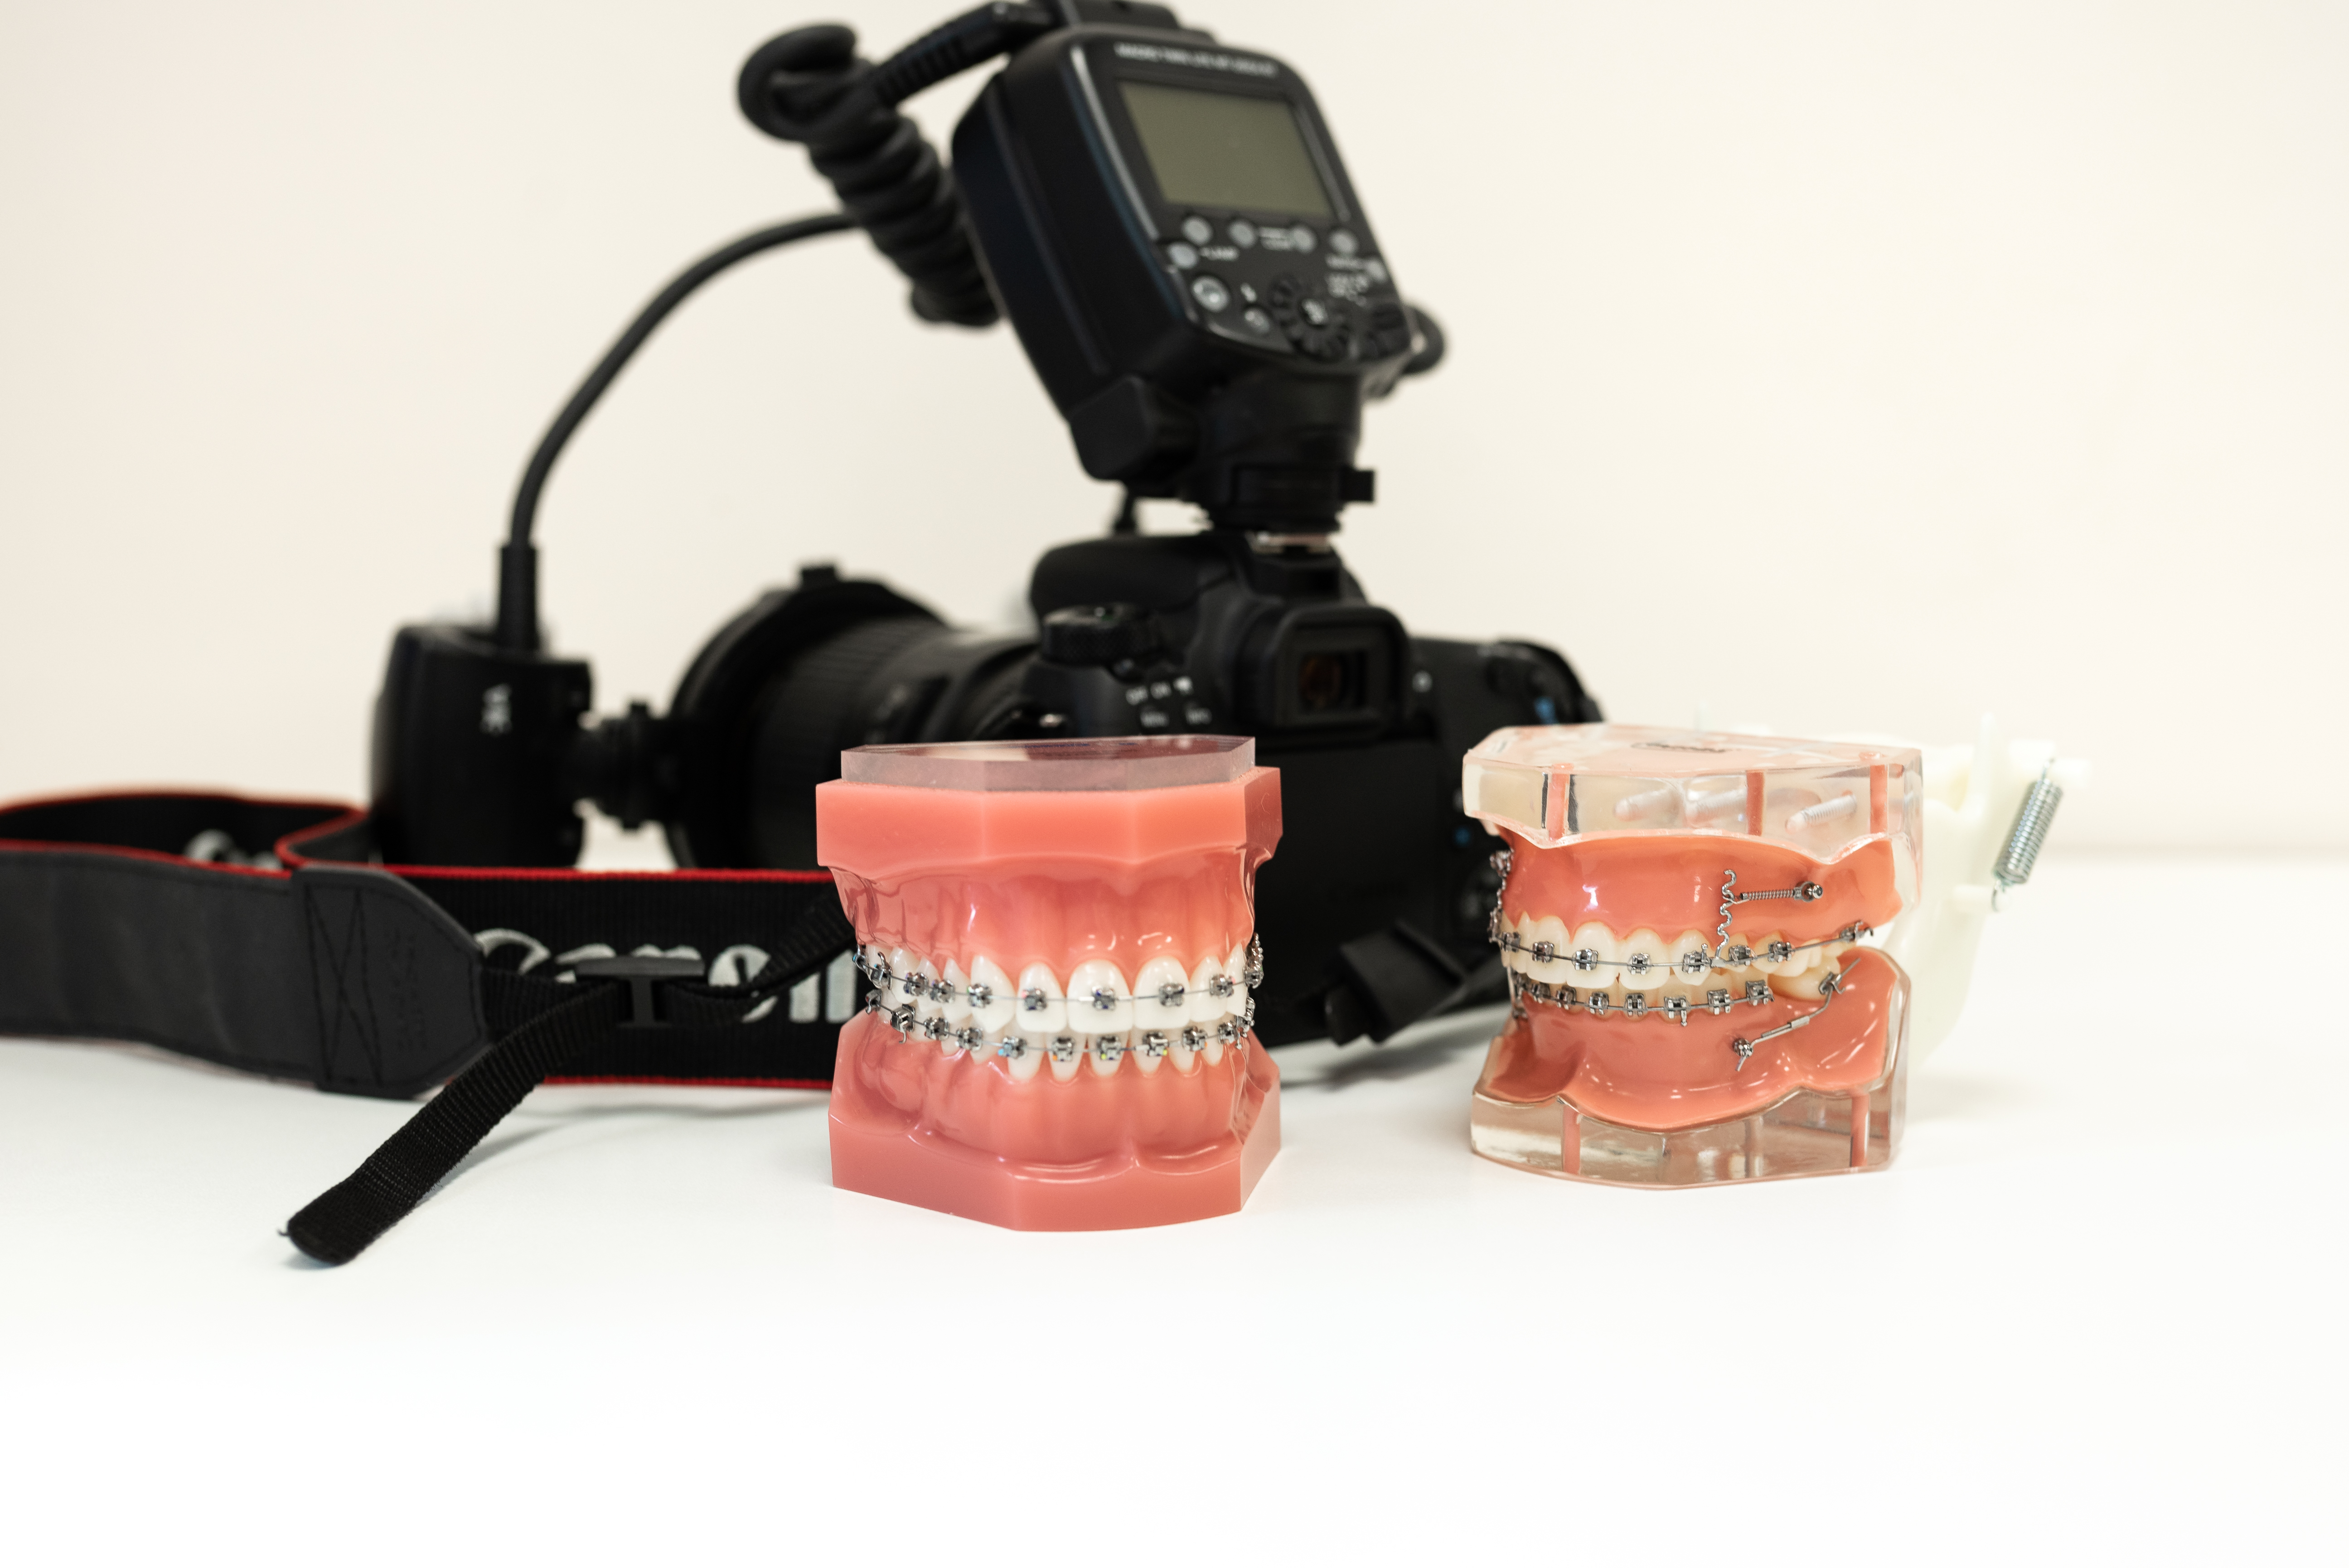 Aparat fotograficzny i modele ortodoncyjne